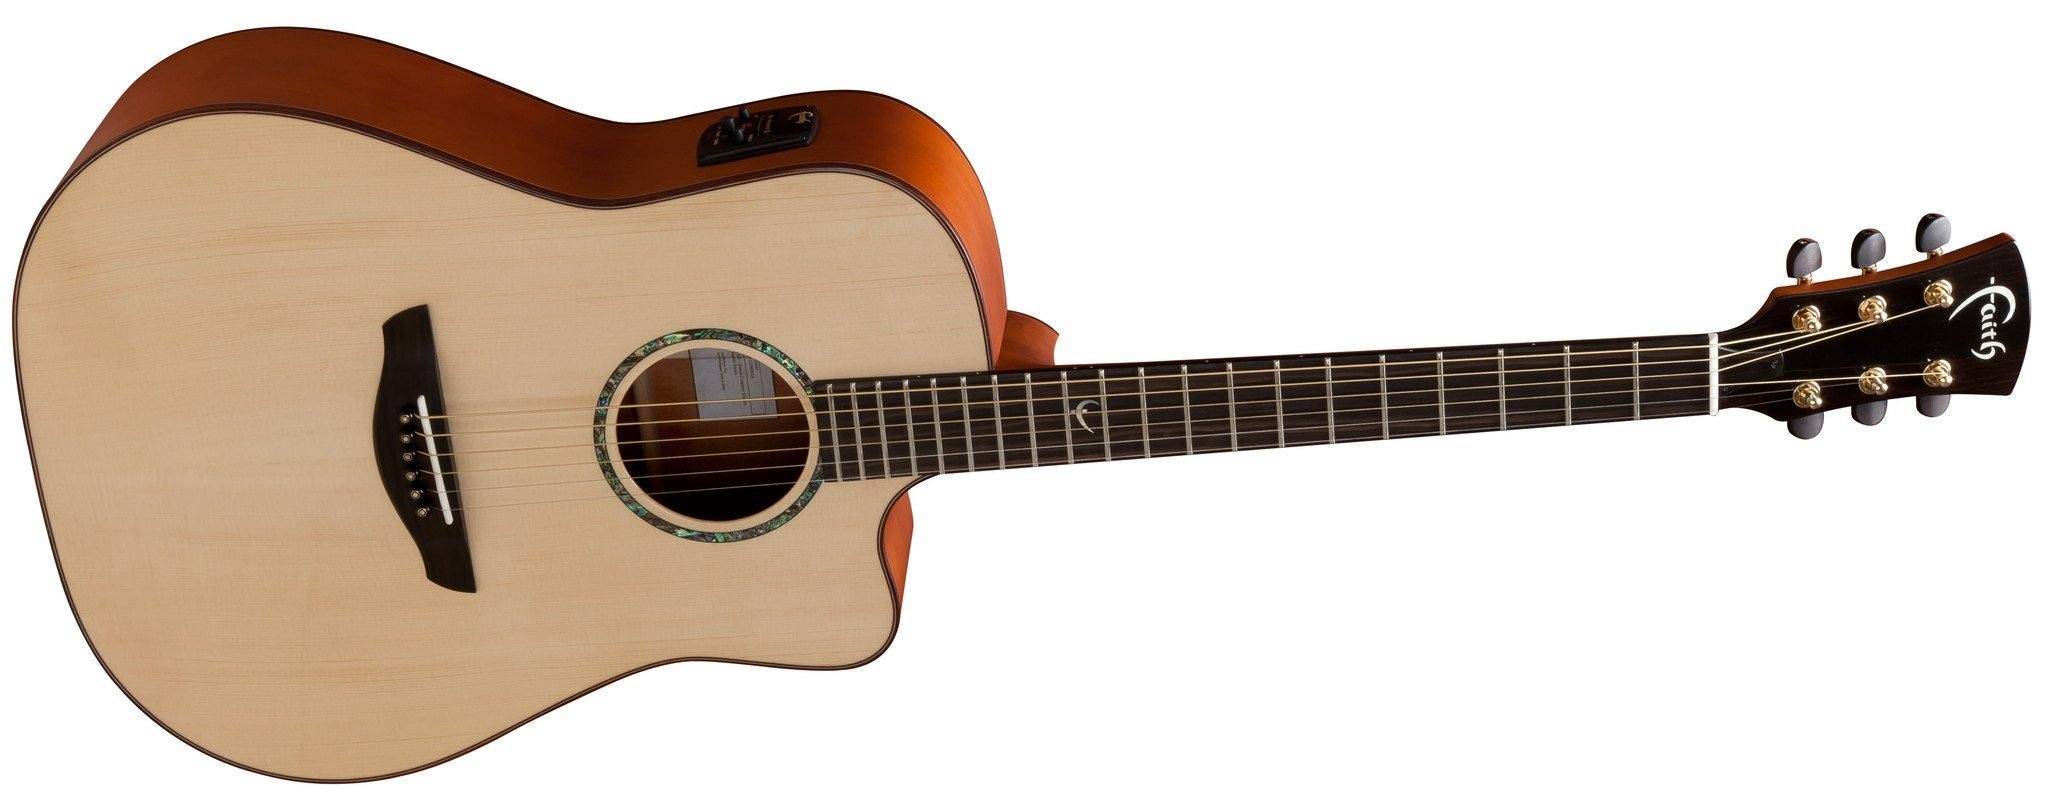 Faith Saturn E/Cut Natural (FSCE) Electro Acoustic Guitar, Electro Acoustic Guitar for sale at Richards Guitars.